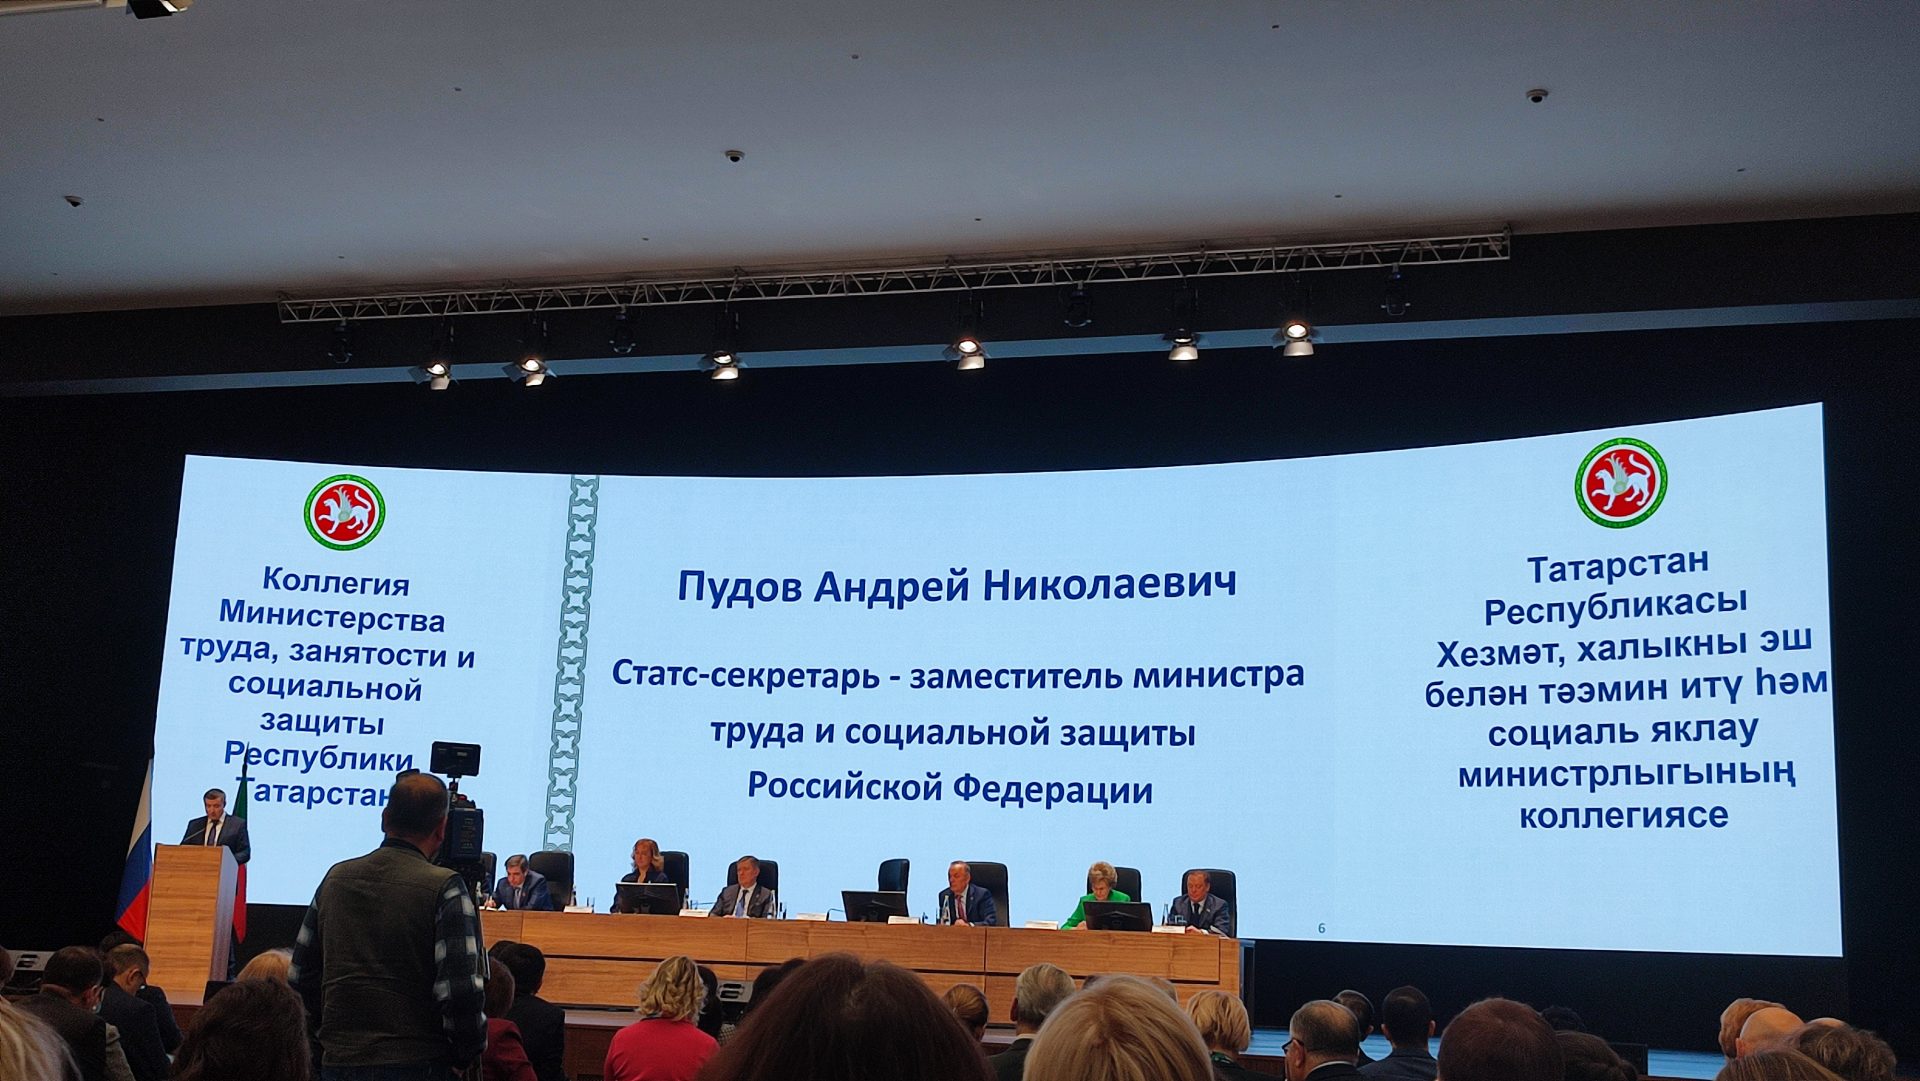 Прошла коллегия Министерства труда, занятости и социальной защиты Республики Татарстан